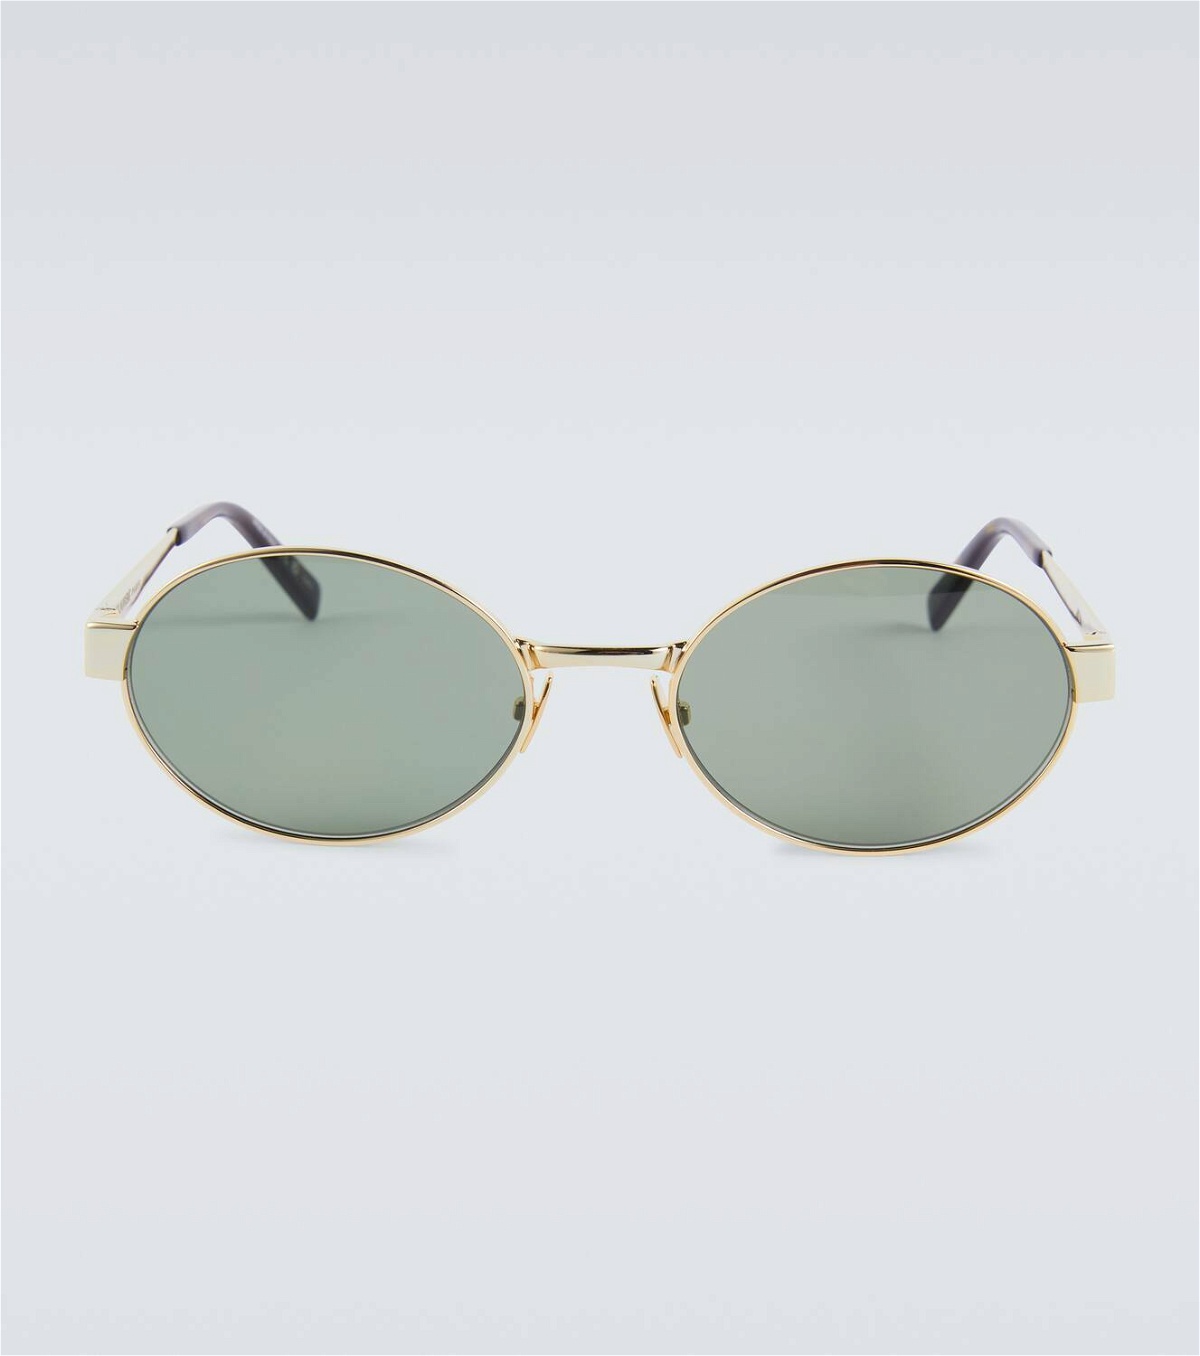 Saint Laurent Round sunglasses